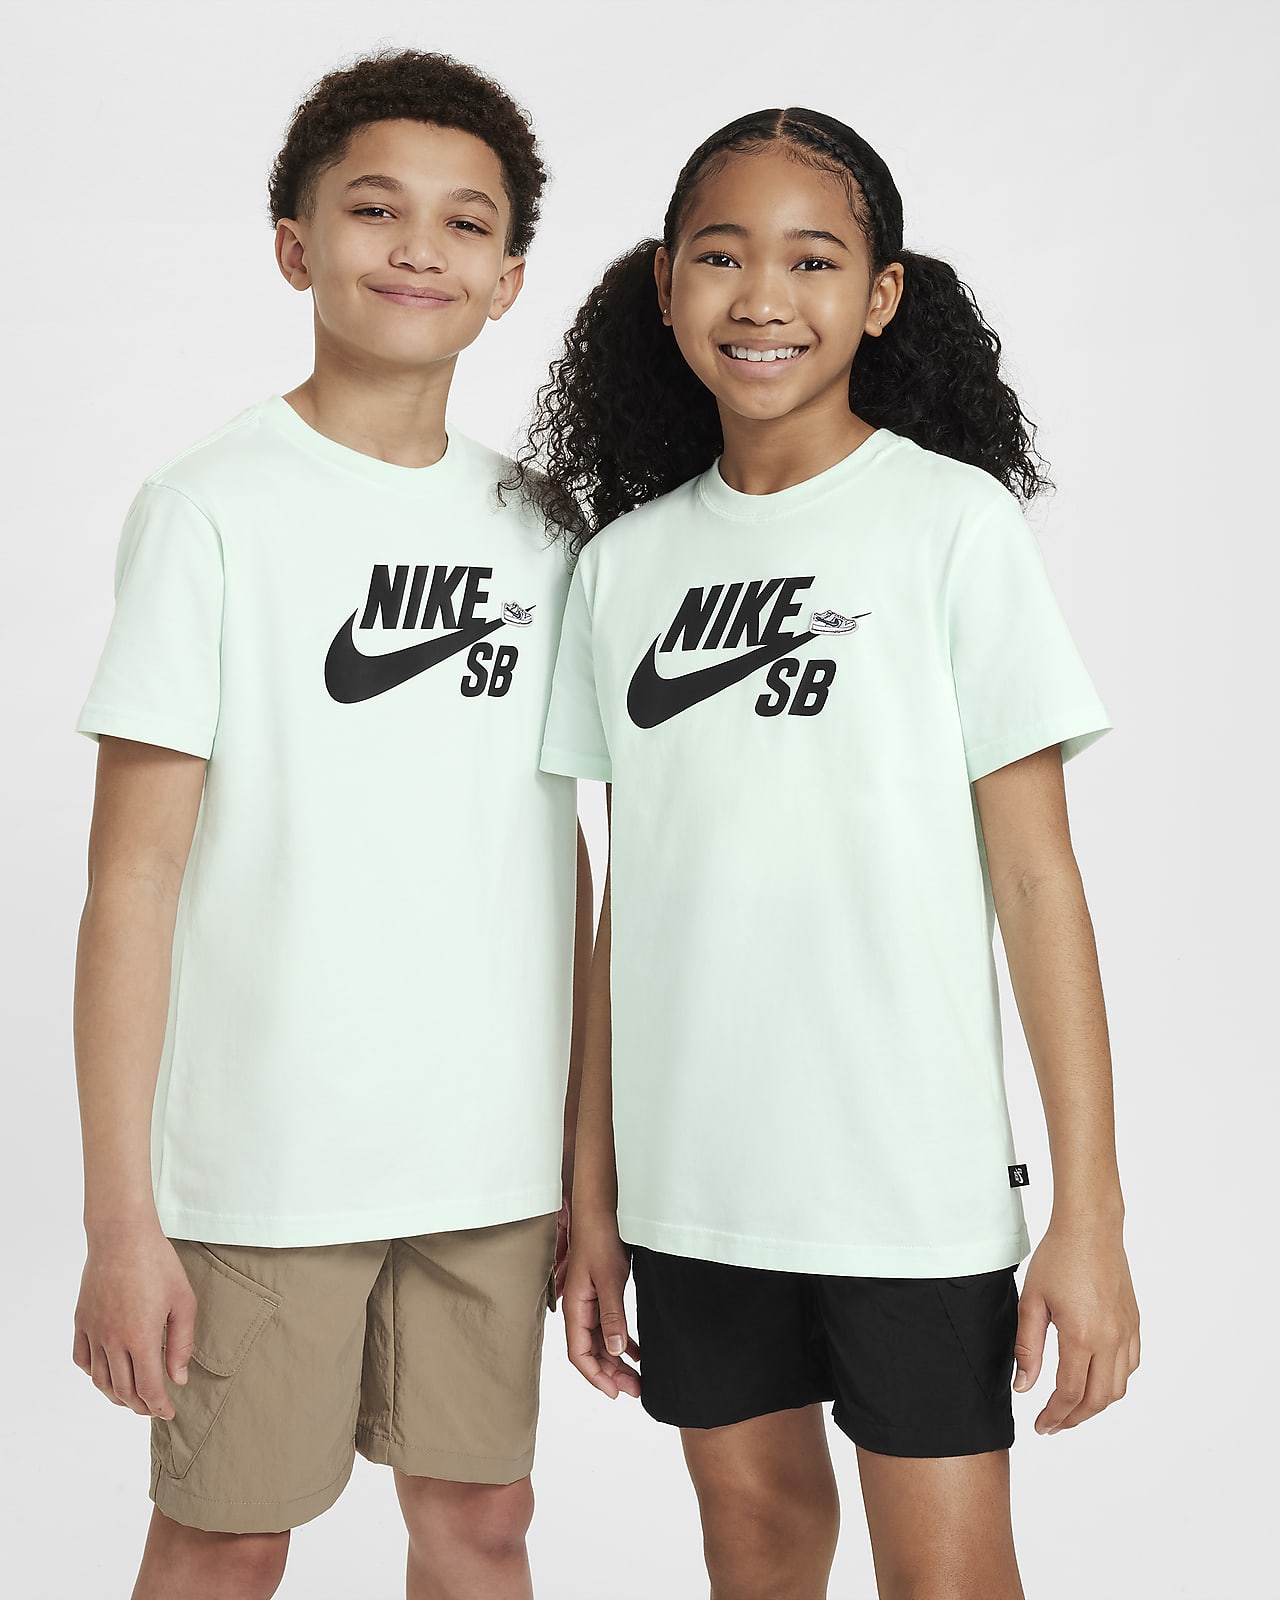 Nike SB Older Kids' T-Shirt